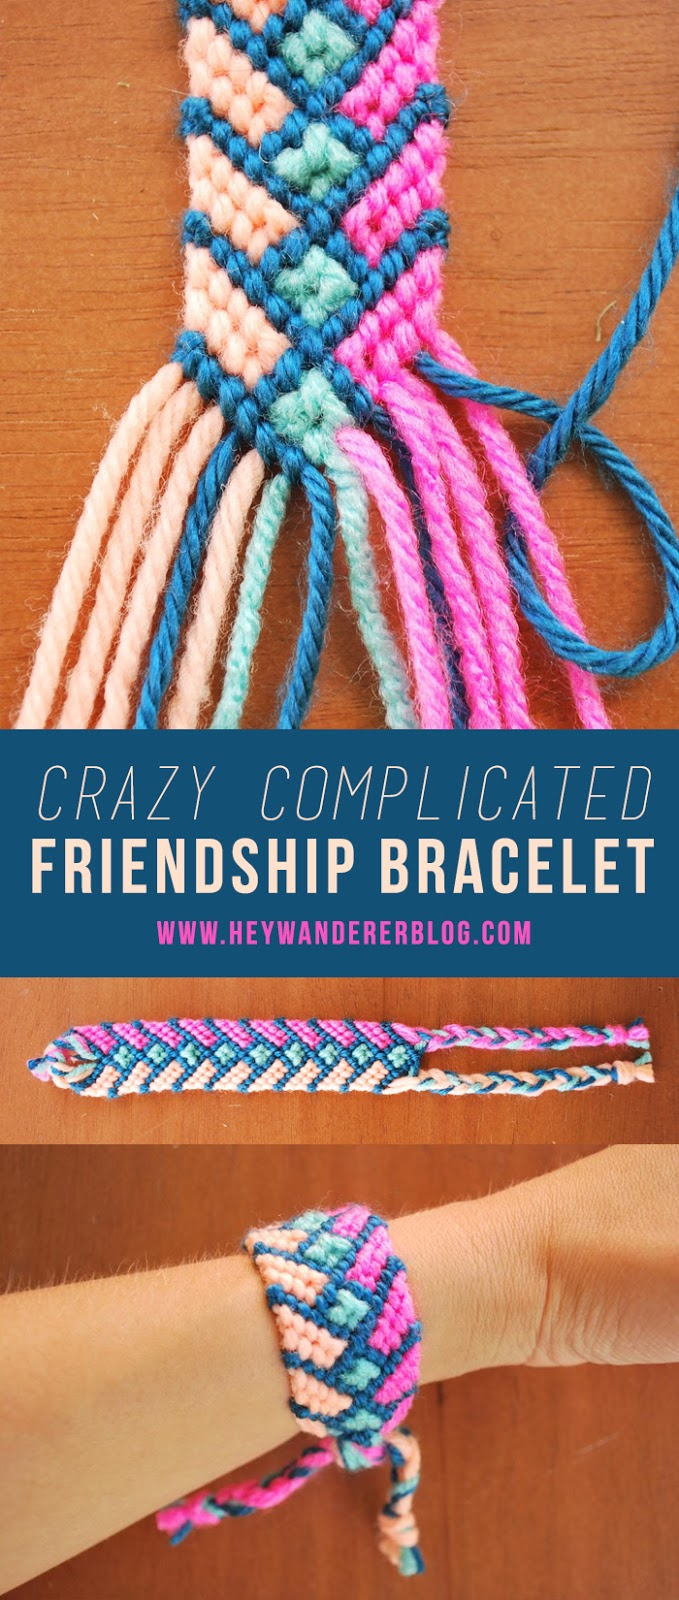 Embroidery Bracelets Patterns Diy The Crazy Complicated Friendship Bracelet